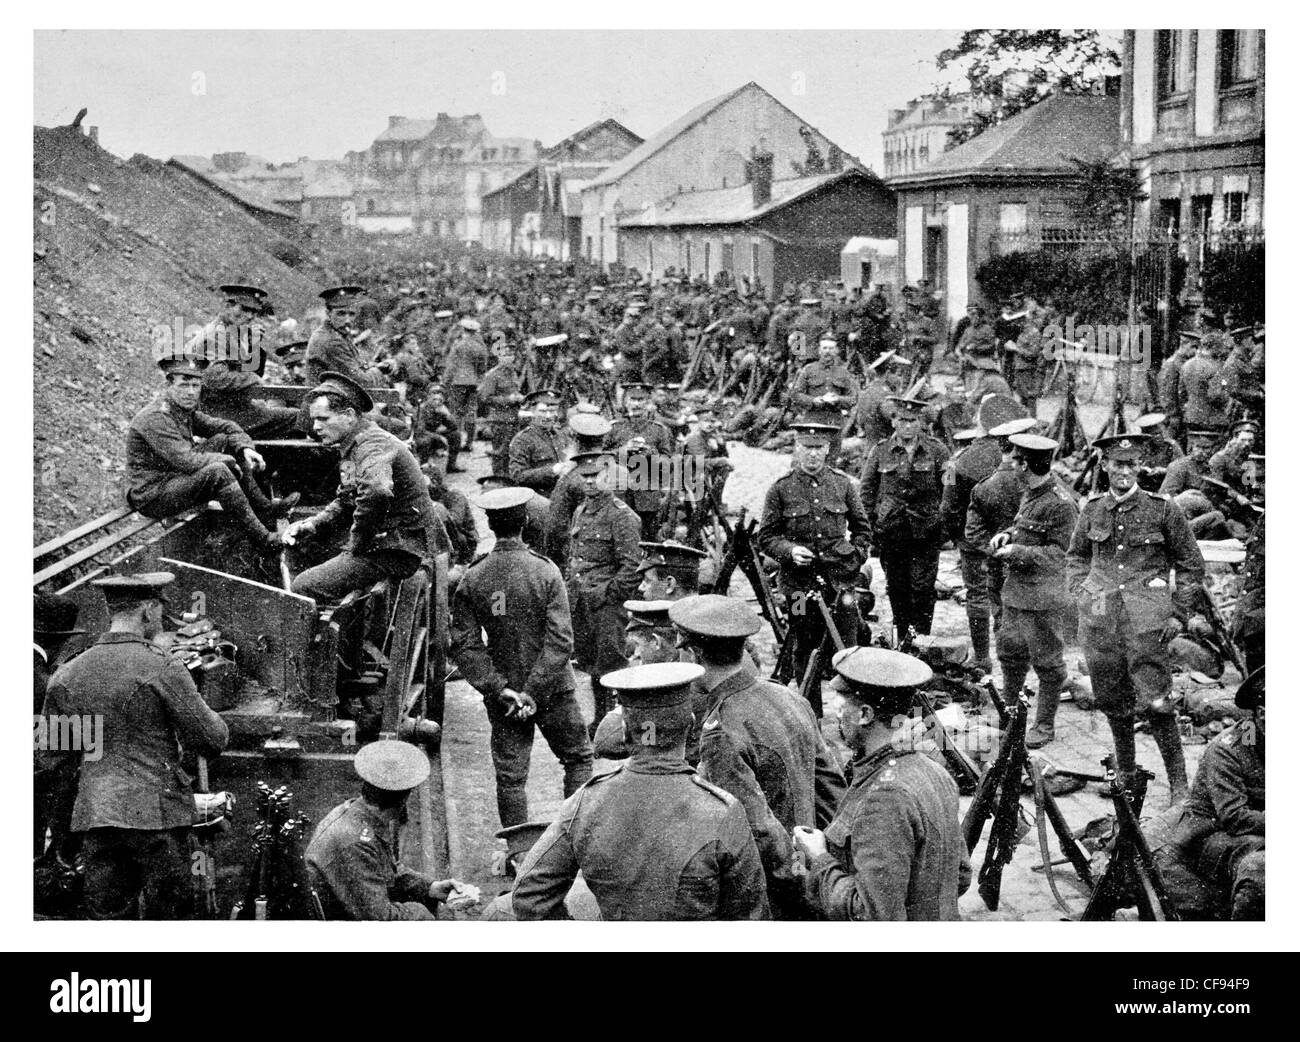 L'infanterie britannique se reposant dans un village de France régiment de l'Armée de l'Artillerie de la ville reste pause Rifle Corps-bataille fatigué Banque D'Images